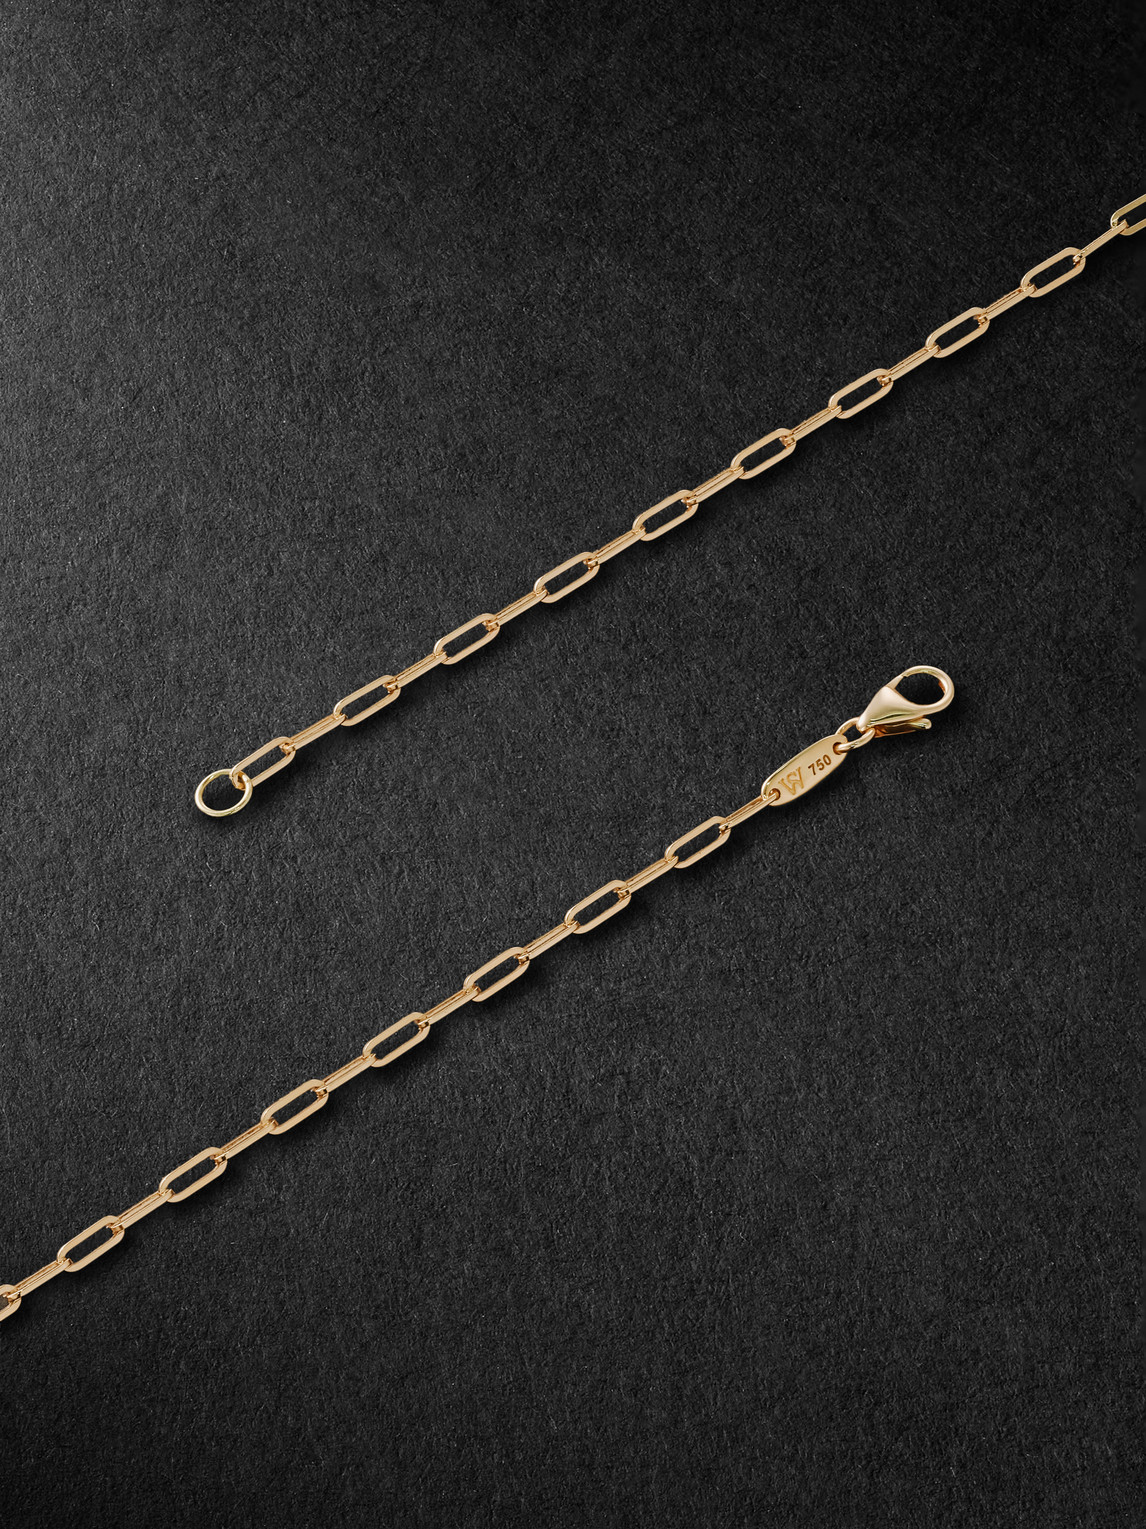 Shop Stephen Webster New Cross 18-karat Gold Pendant Necklace